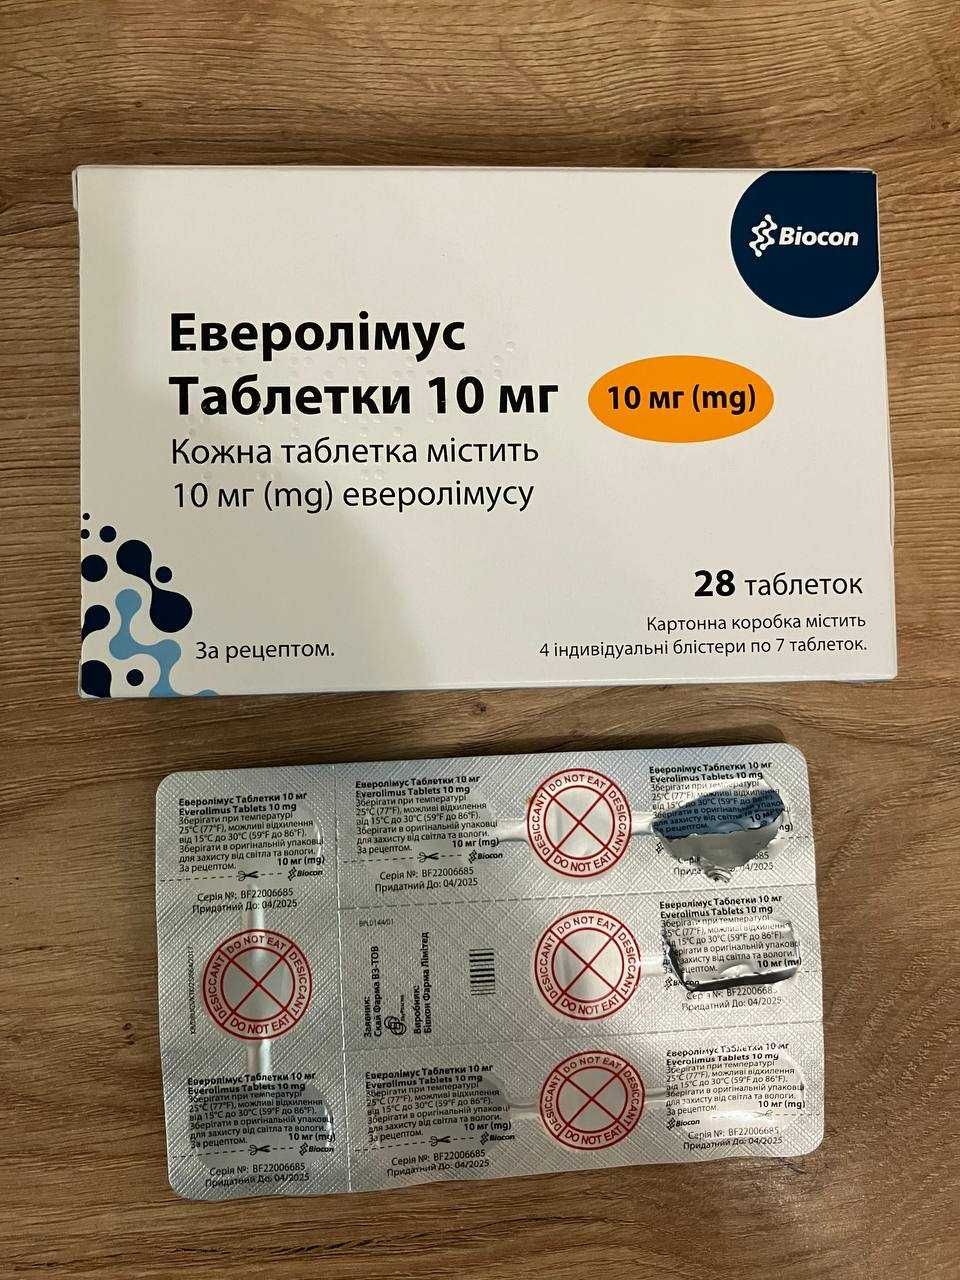 Еверолімус 10мг, таблетки від онкології